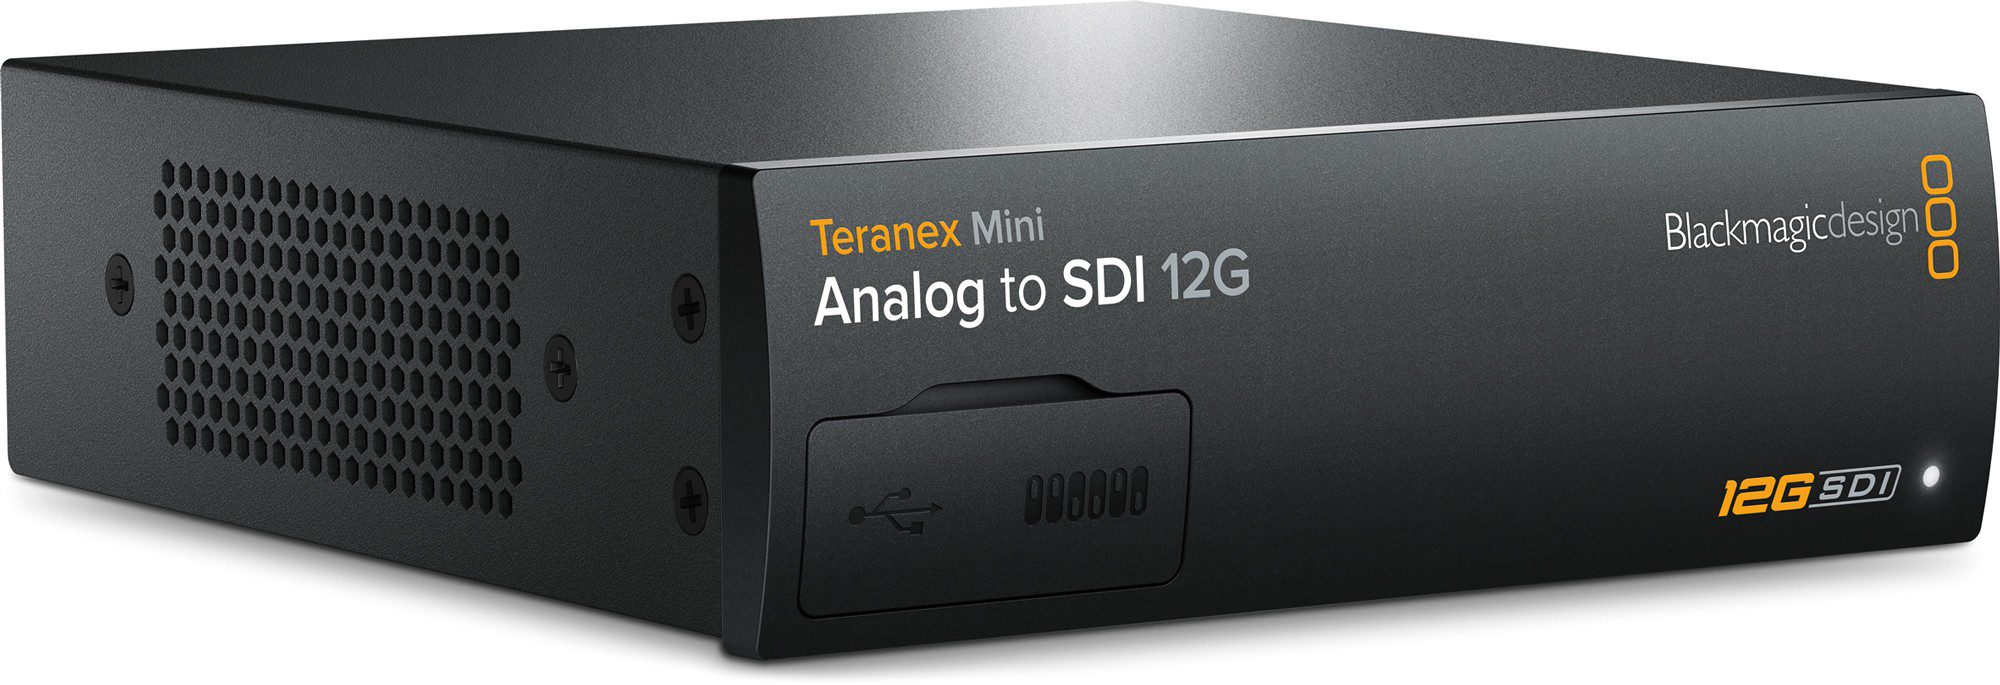 Blackmagic Teranex Mini - Analog to SDI 12G